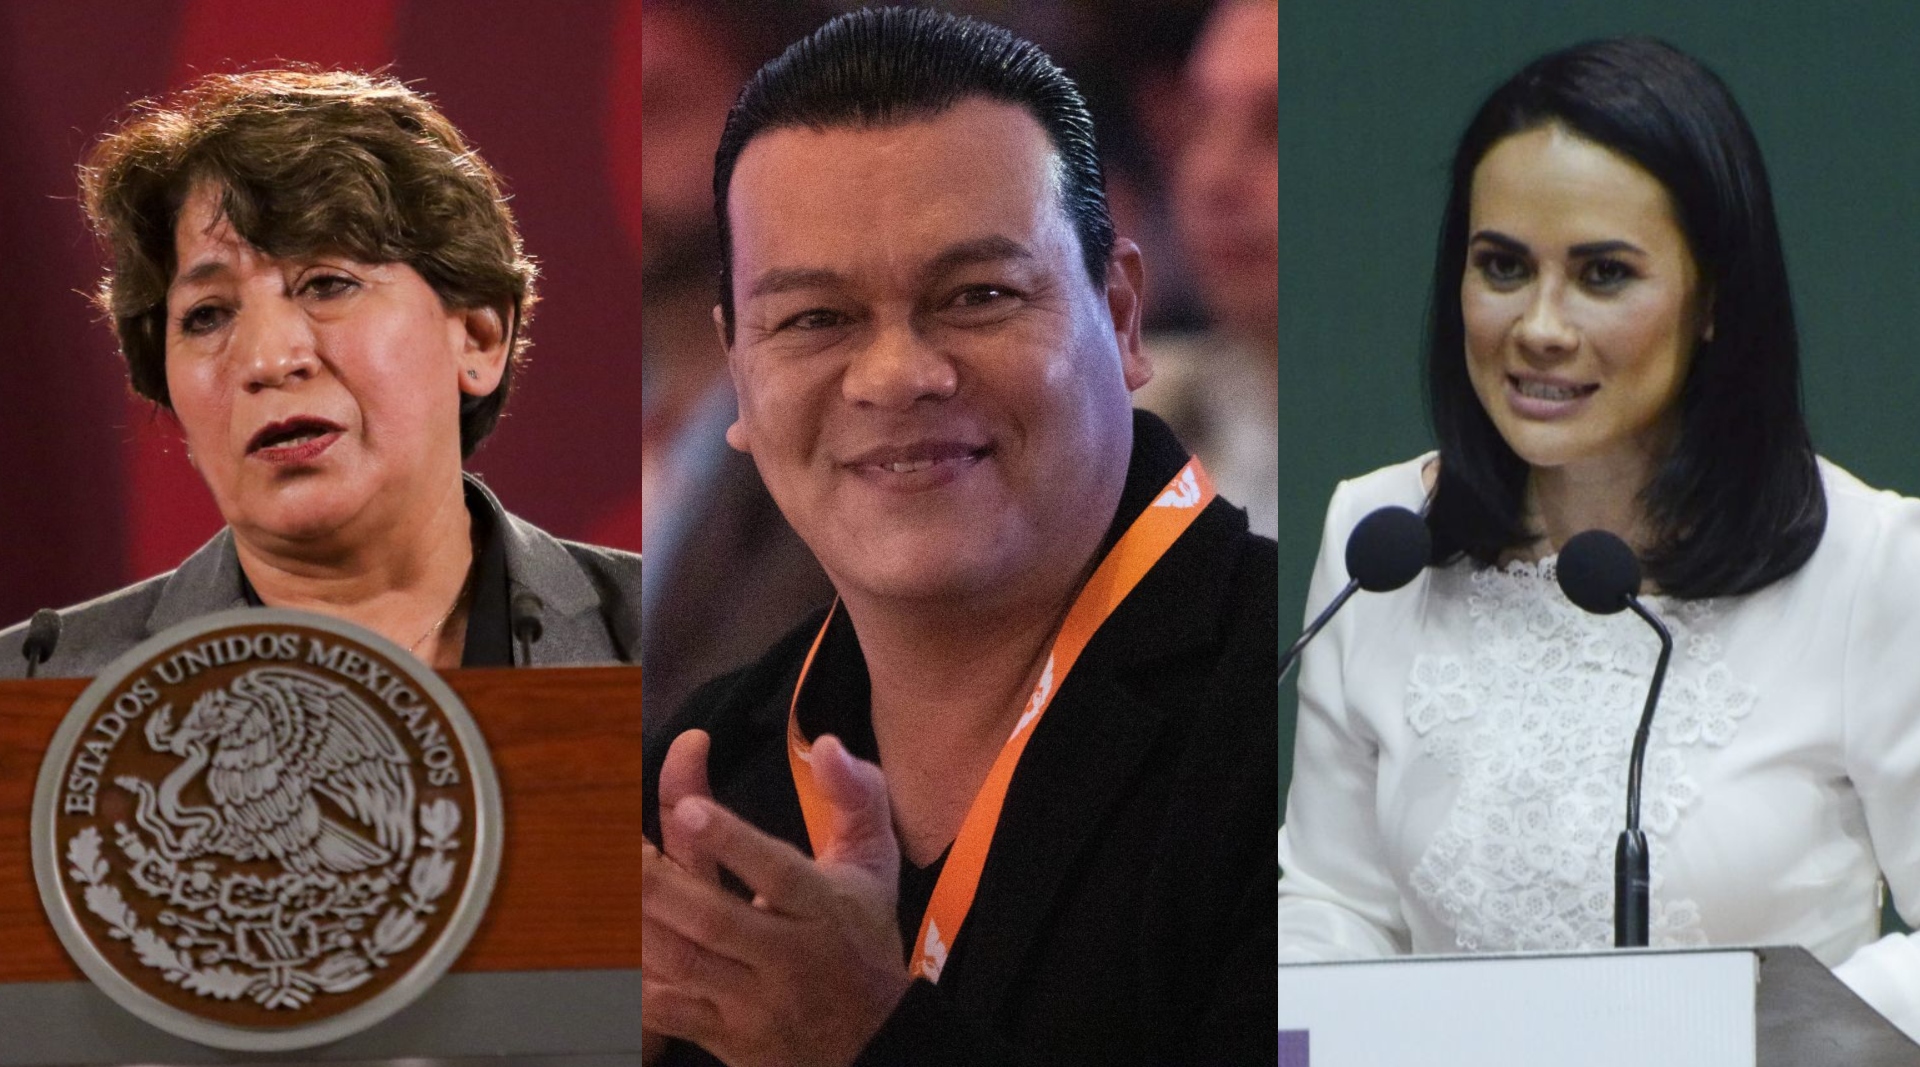 Delfina Gómez, Juan Zepeda y Alejandra del Moral se perfilan como contendientes para los comicios en el Edomex. (Cuartoscuro)